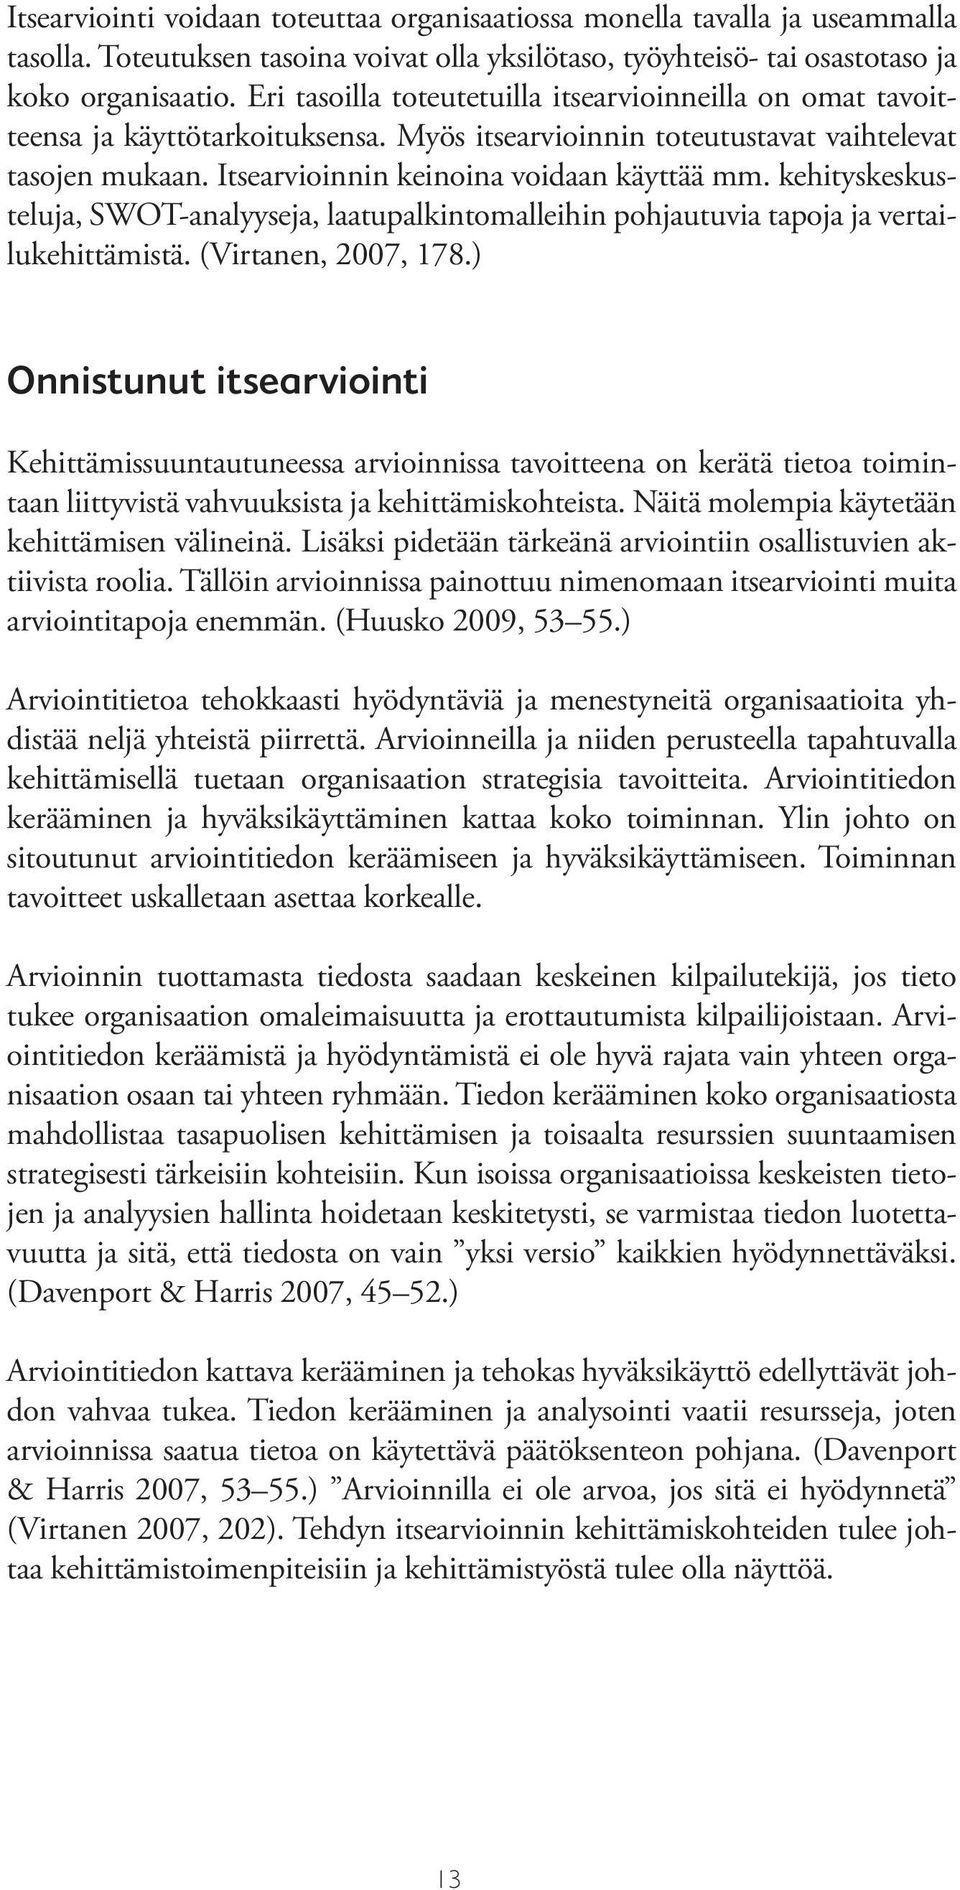 kehityskeskusteluja, SWOT-analyyseja, laatupalkintomalleihin pohjautuvia tapoja ja vertailukehittämistä. (Virtanen, 2007, 178.